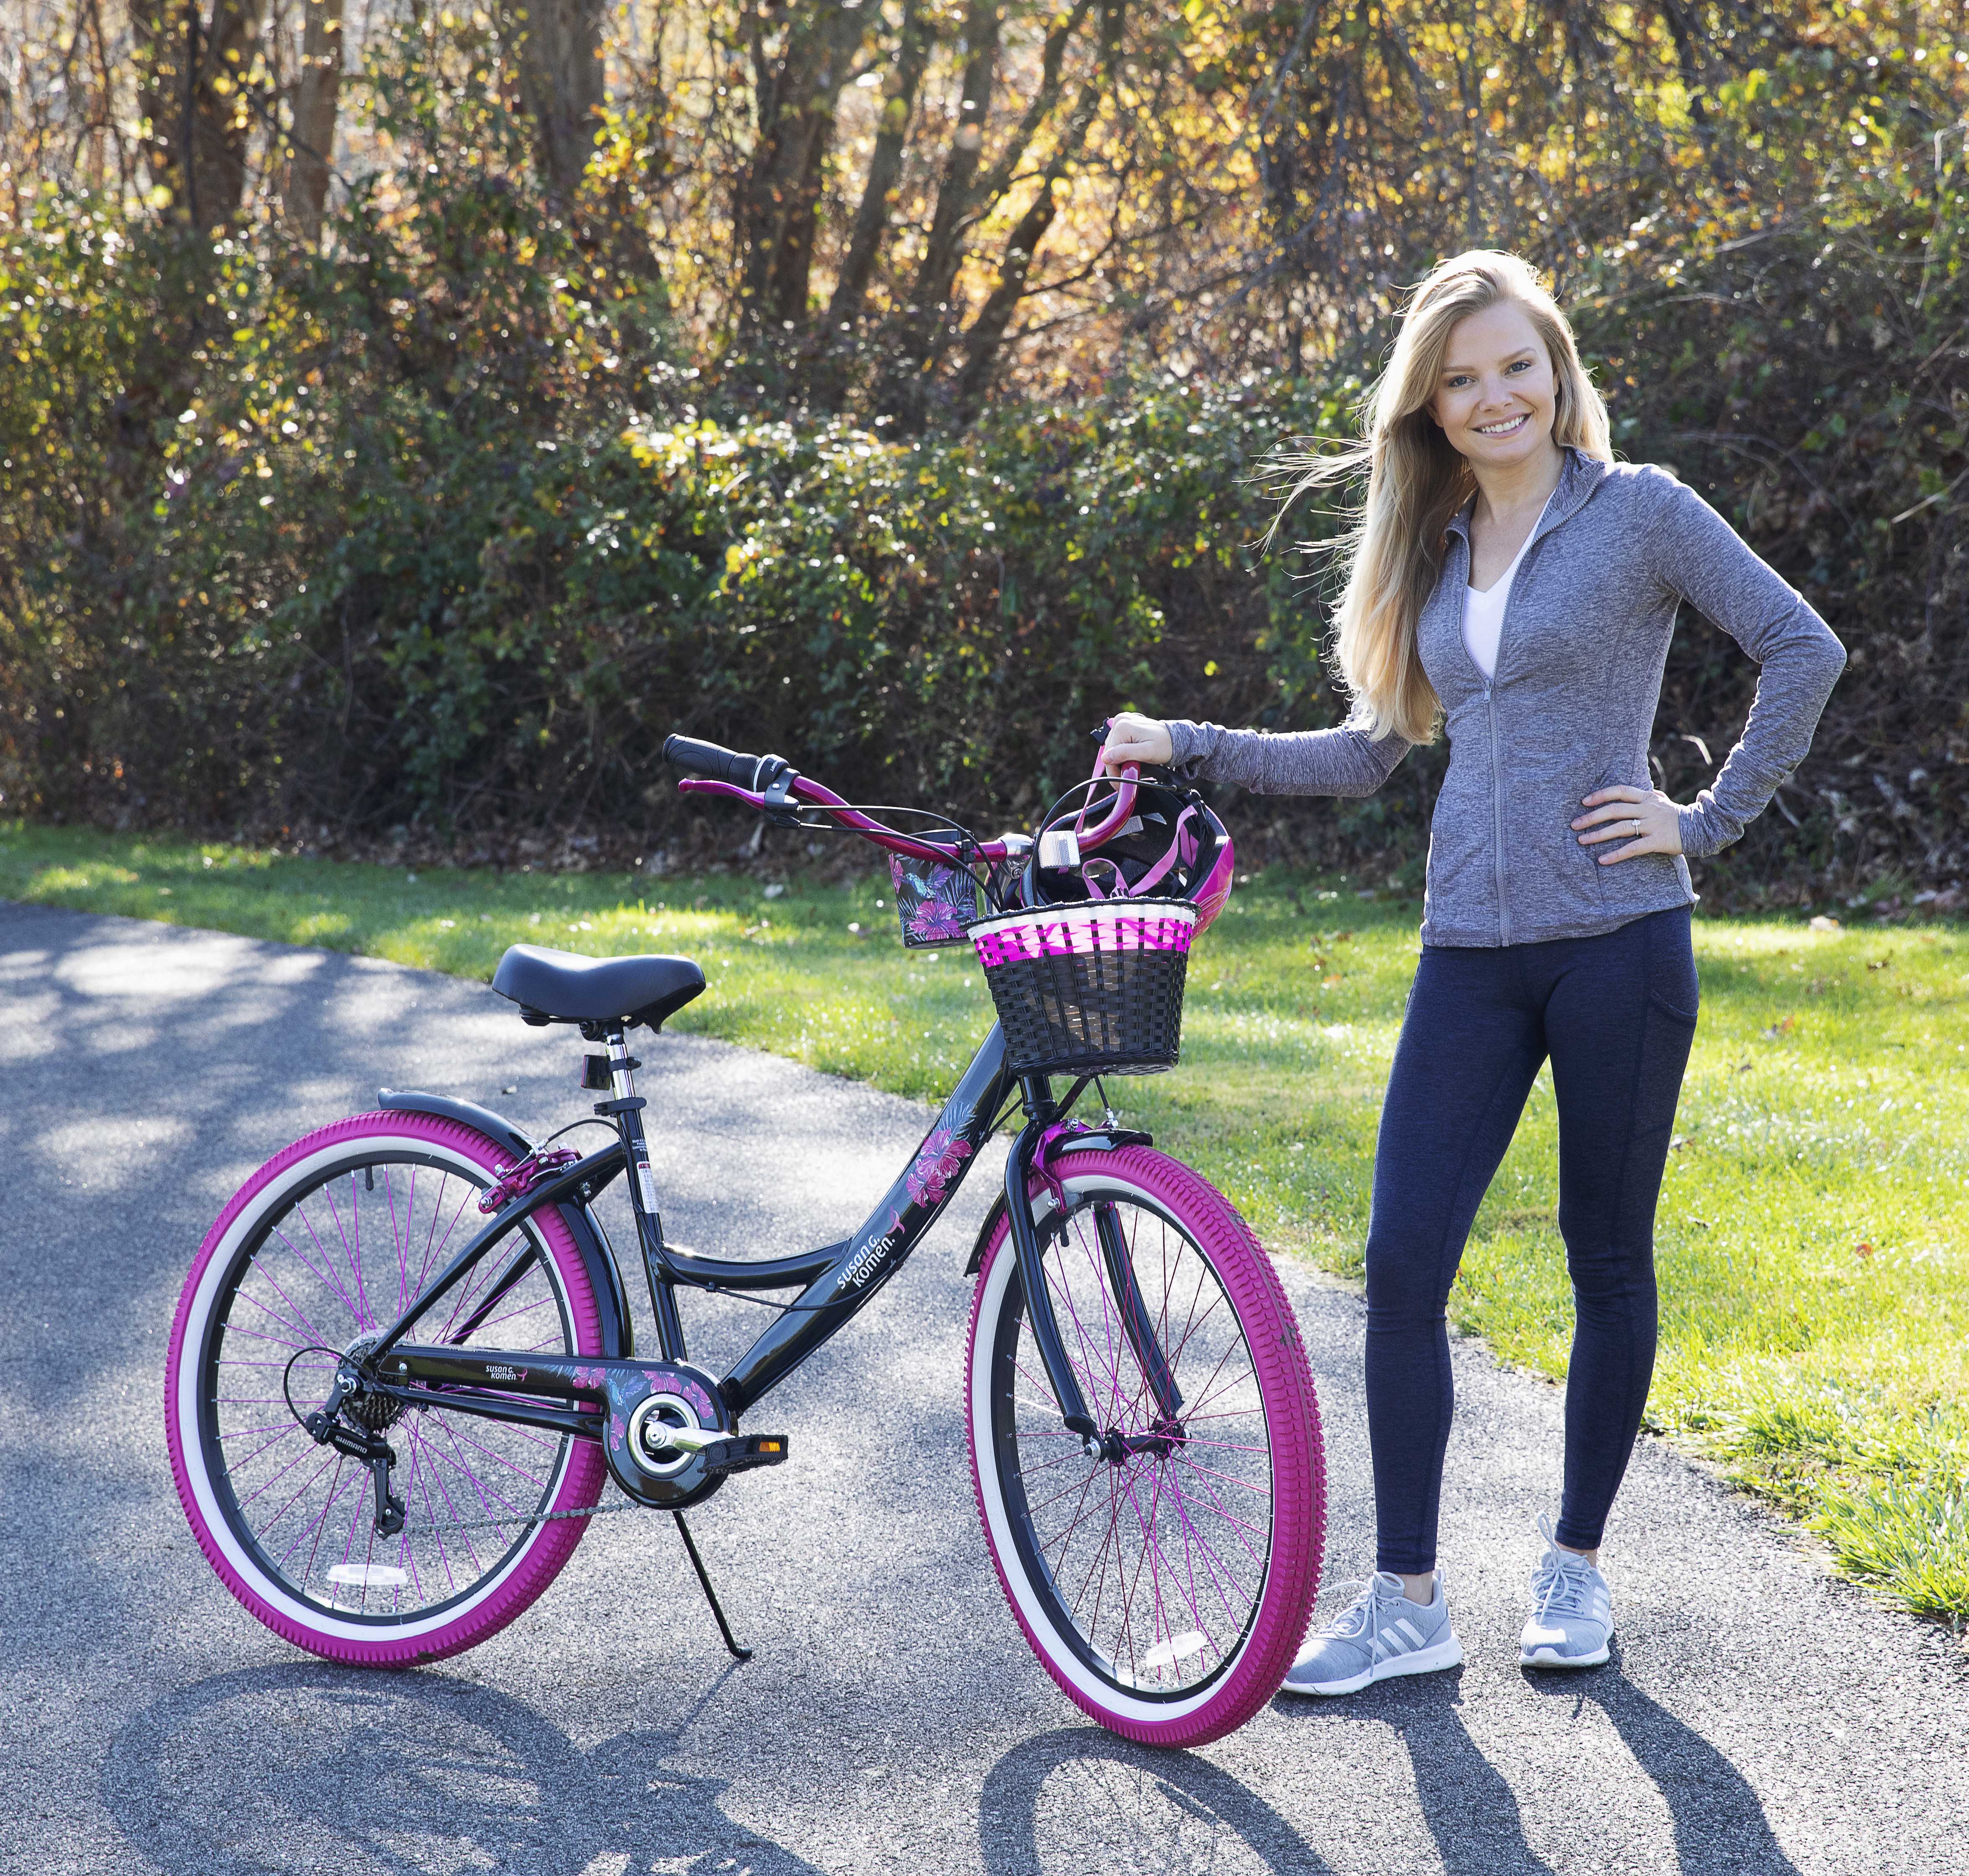 Susan G Komen 26" Women's Cruiser Bike, Black/Pink - image 7 of 10